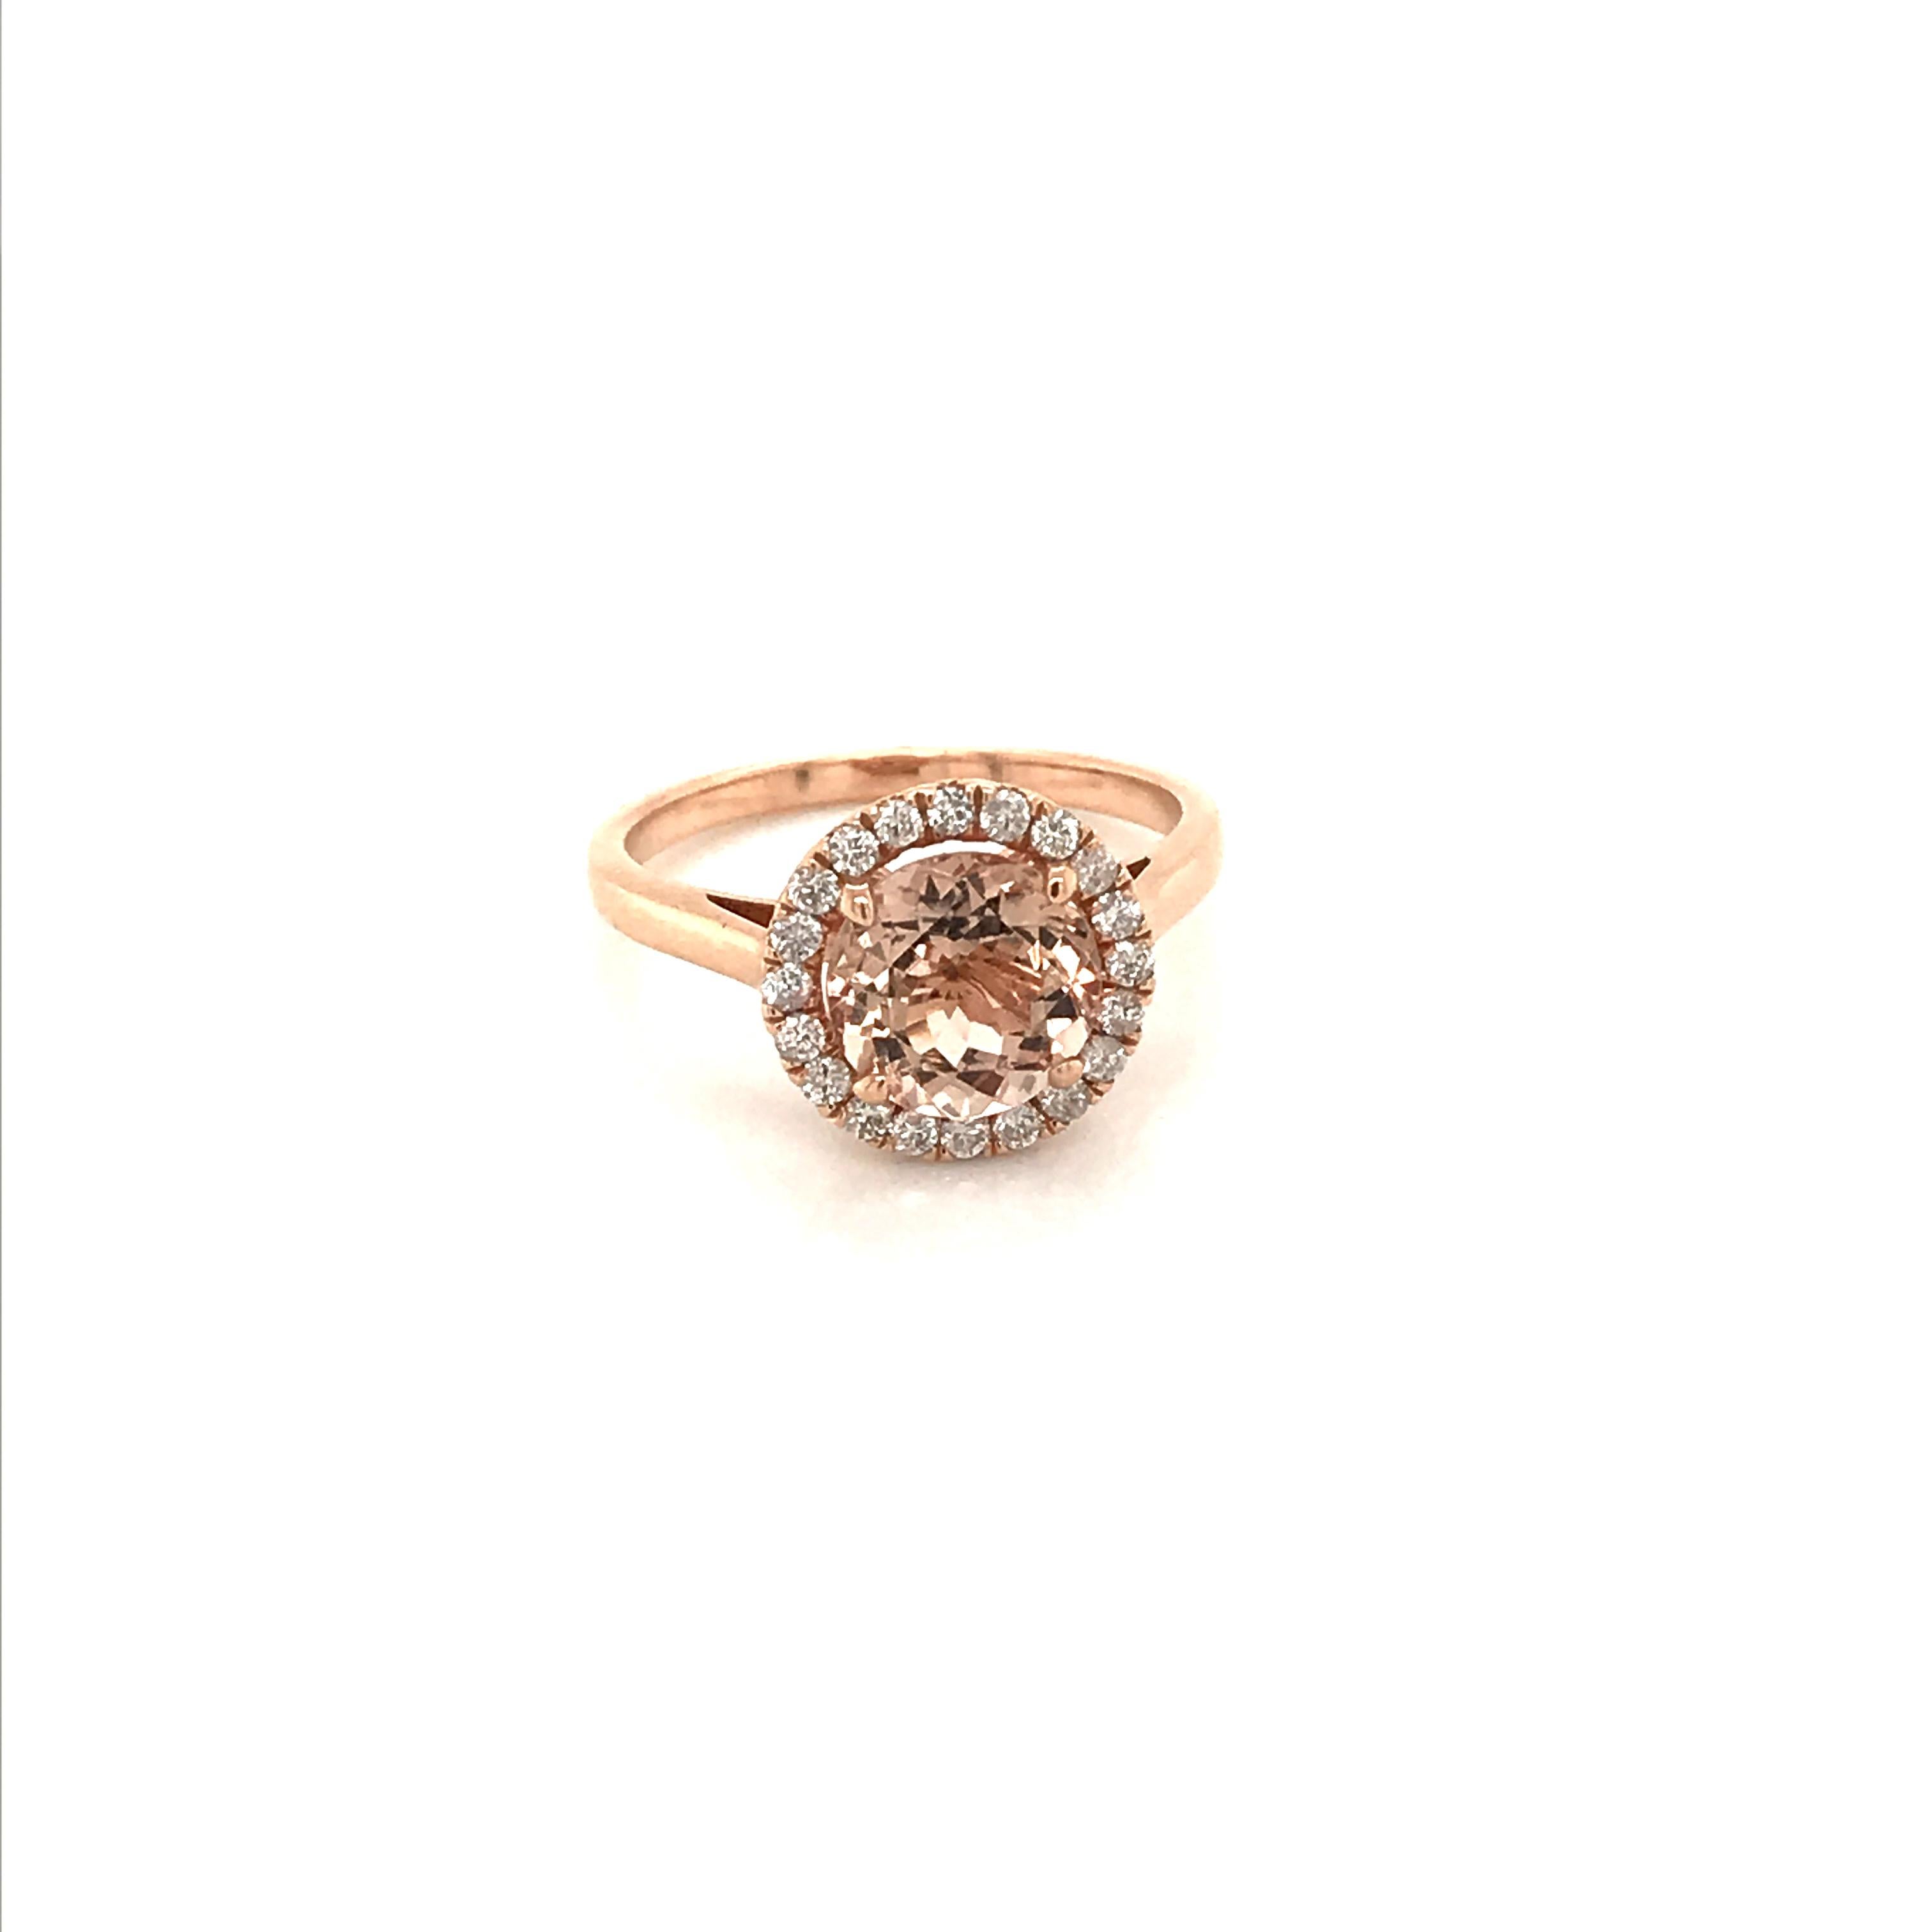 Il s'agit d'une superbe bague en morganite naturelle et diamants sertie dans de l'or rose massif 14 carats. La morganite naturelle de 9MM de taille ronde a une excellente couleur rose pêche et est entourée d'un halo de diamants blancs. La bague est